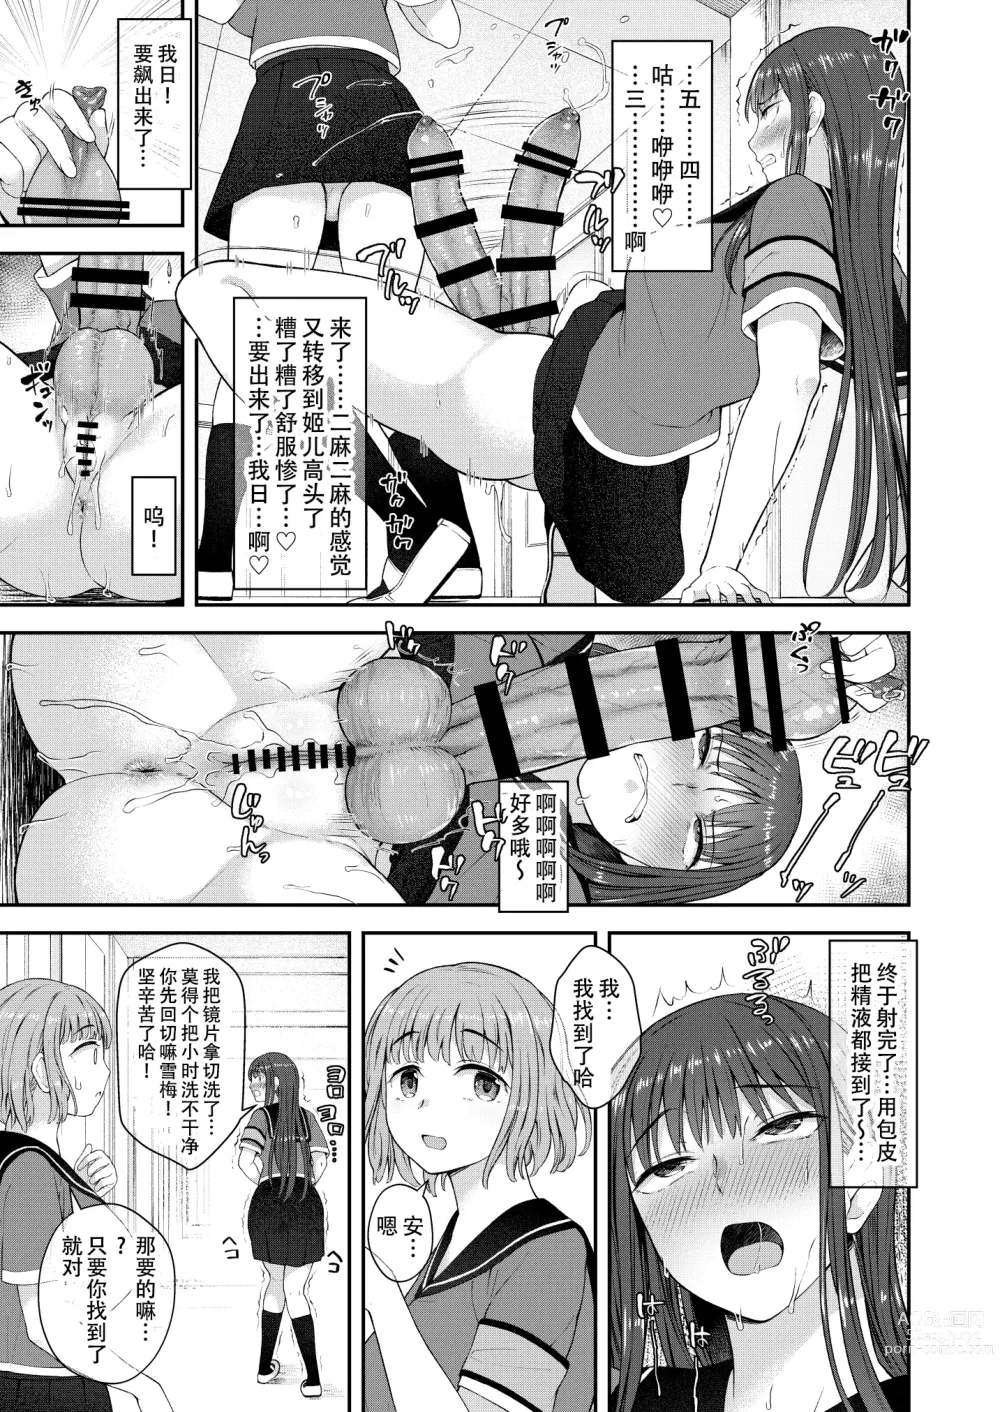 Page 10 of doujinshi Danseiki Roshutsu Jidori-han no Shoutai wa Kanojo dake ga Shitteiru.